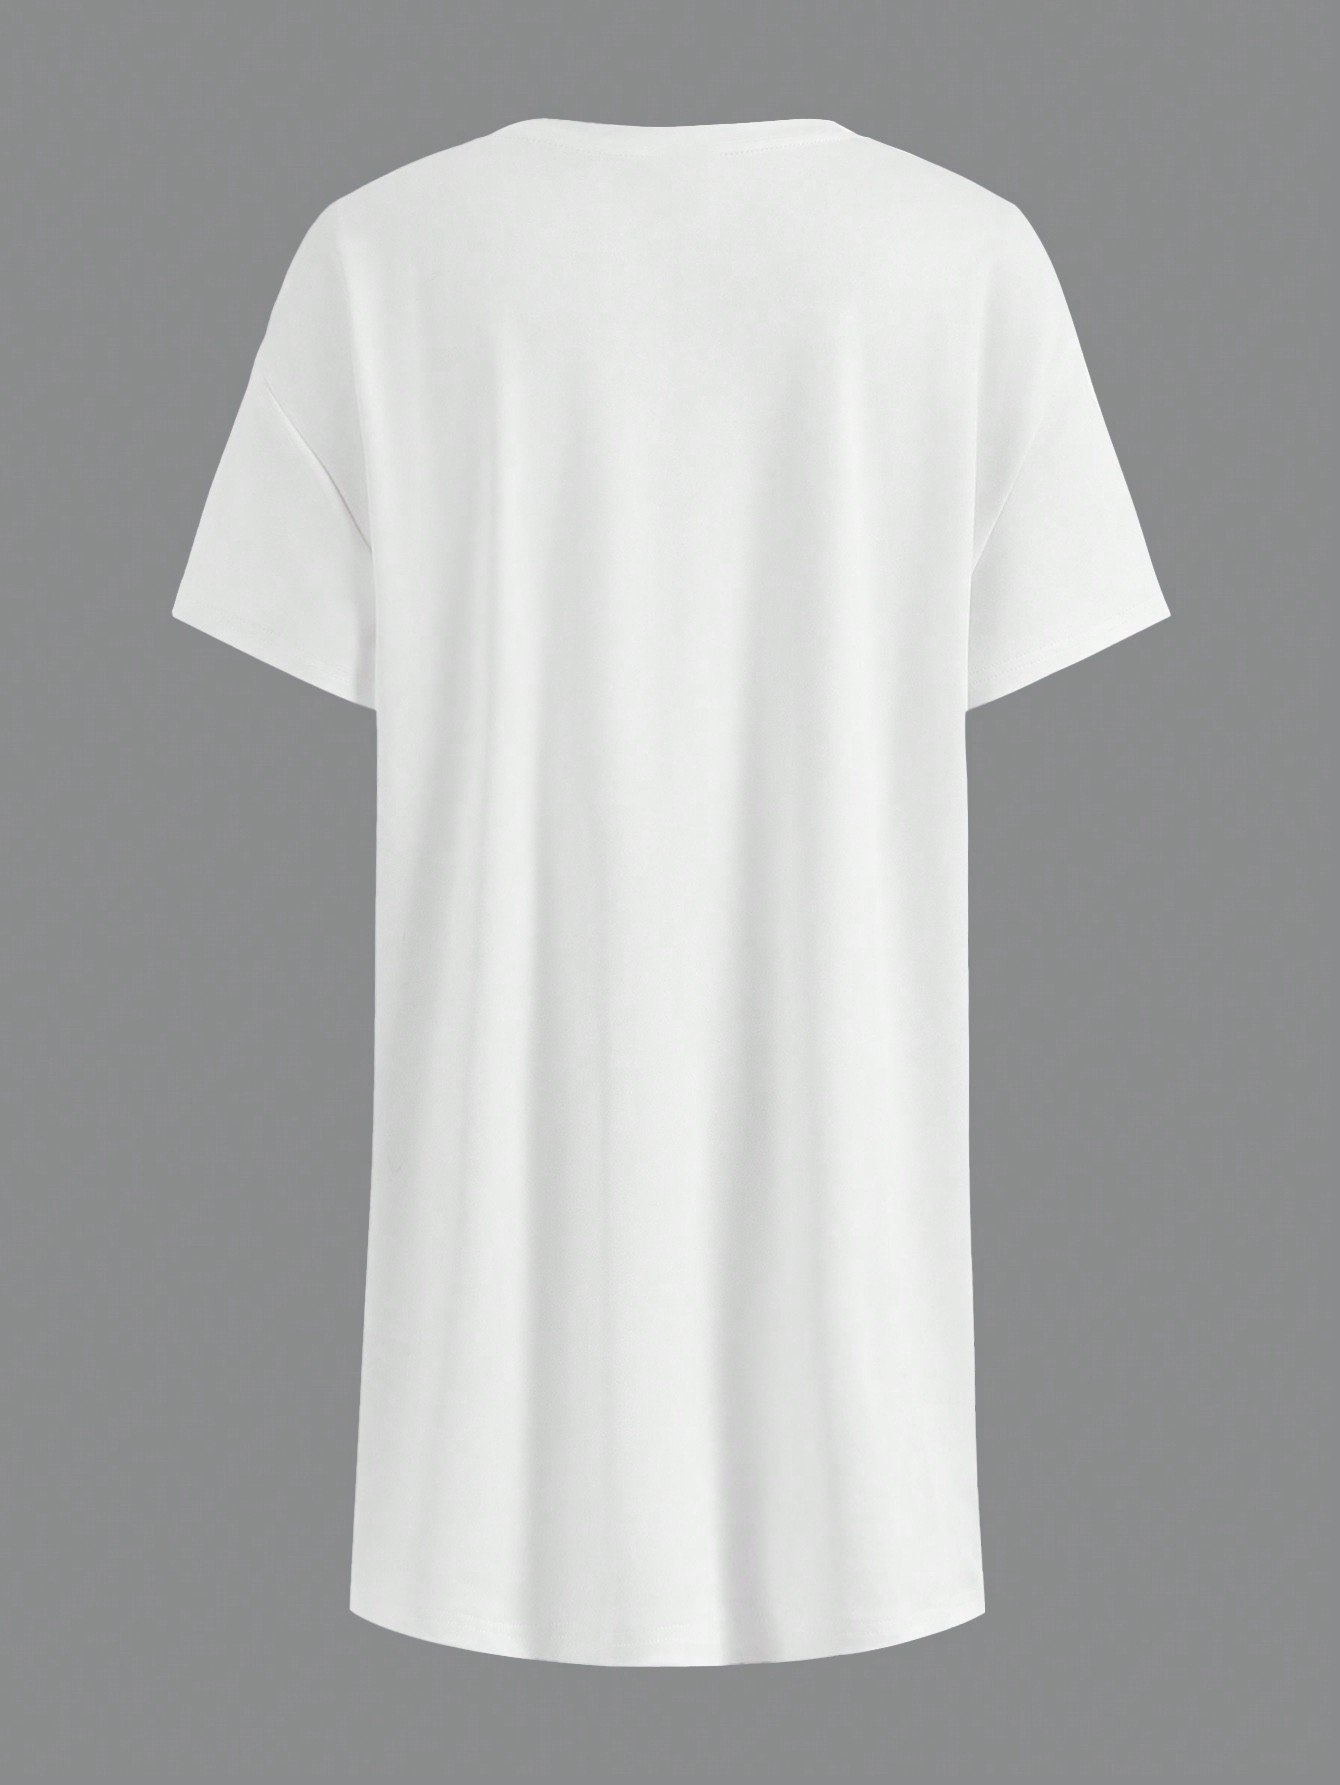 キッドコア ドーパミンカートゥーンプリント オーバーサイズ Tシャツ ロゴ グラフィックショートスリーブtシャツ